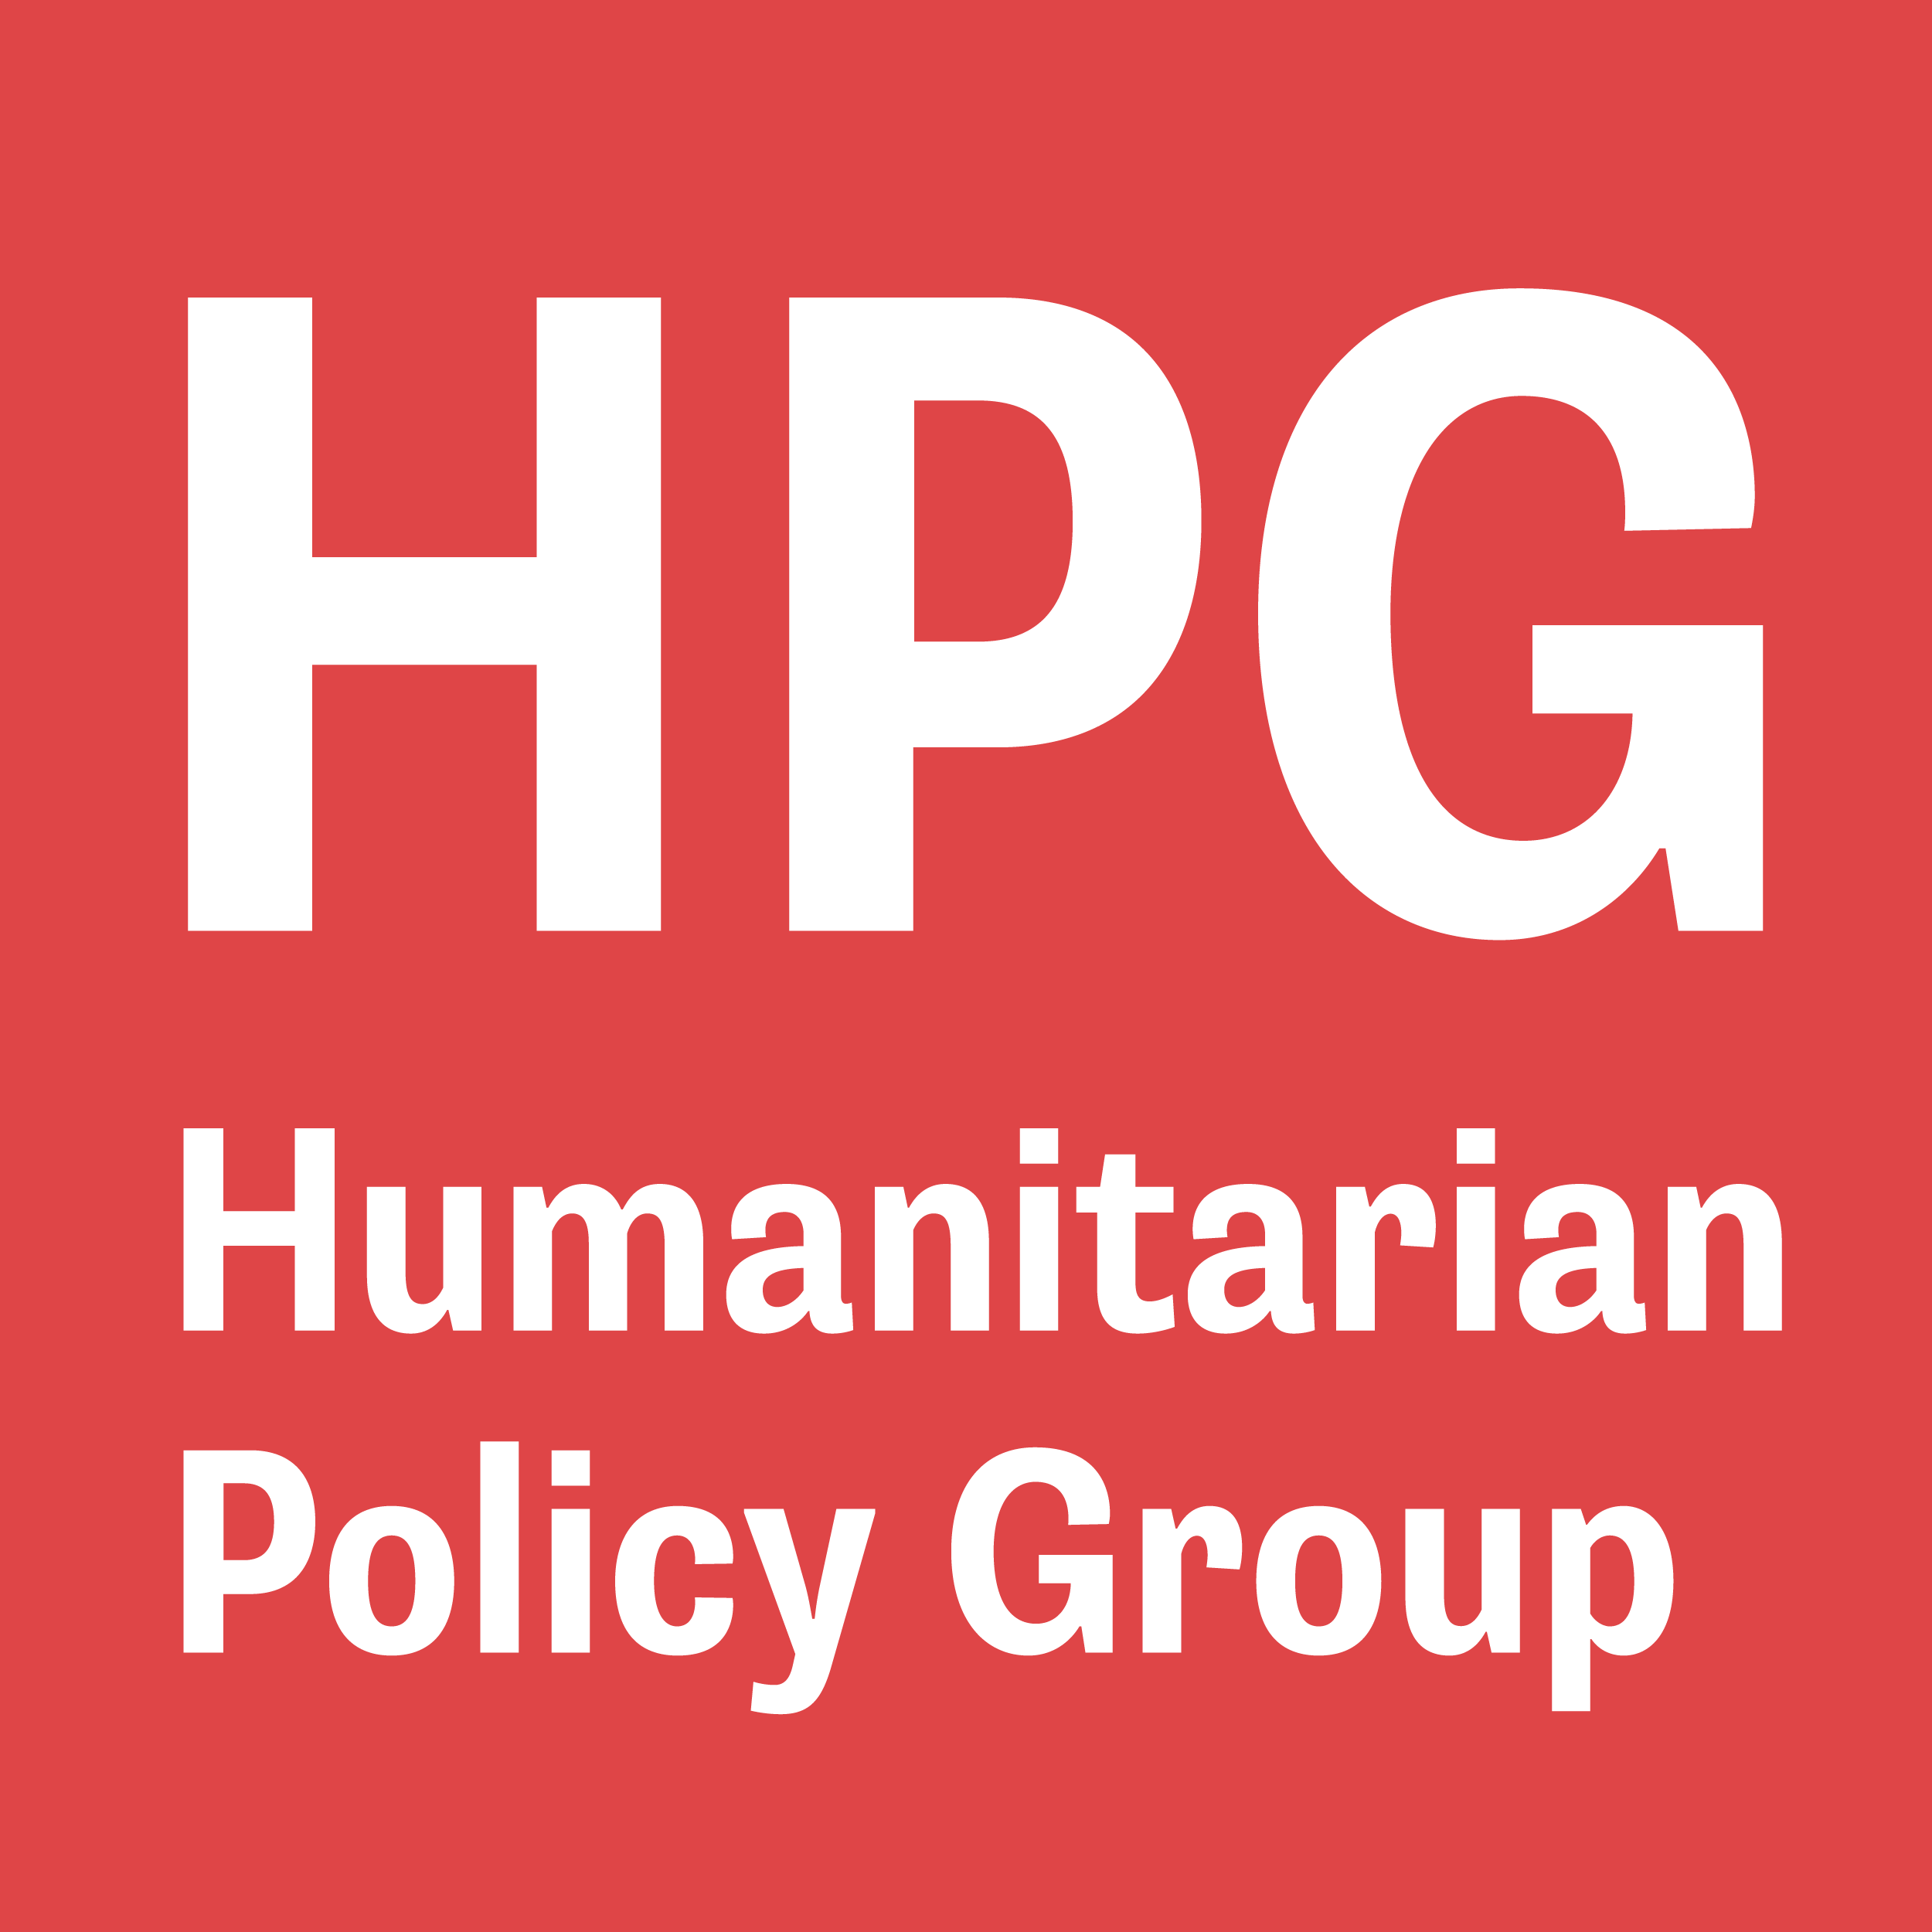 Humanitarian Policy Group Logo 2019.